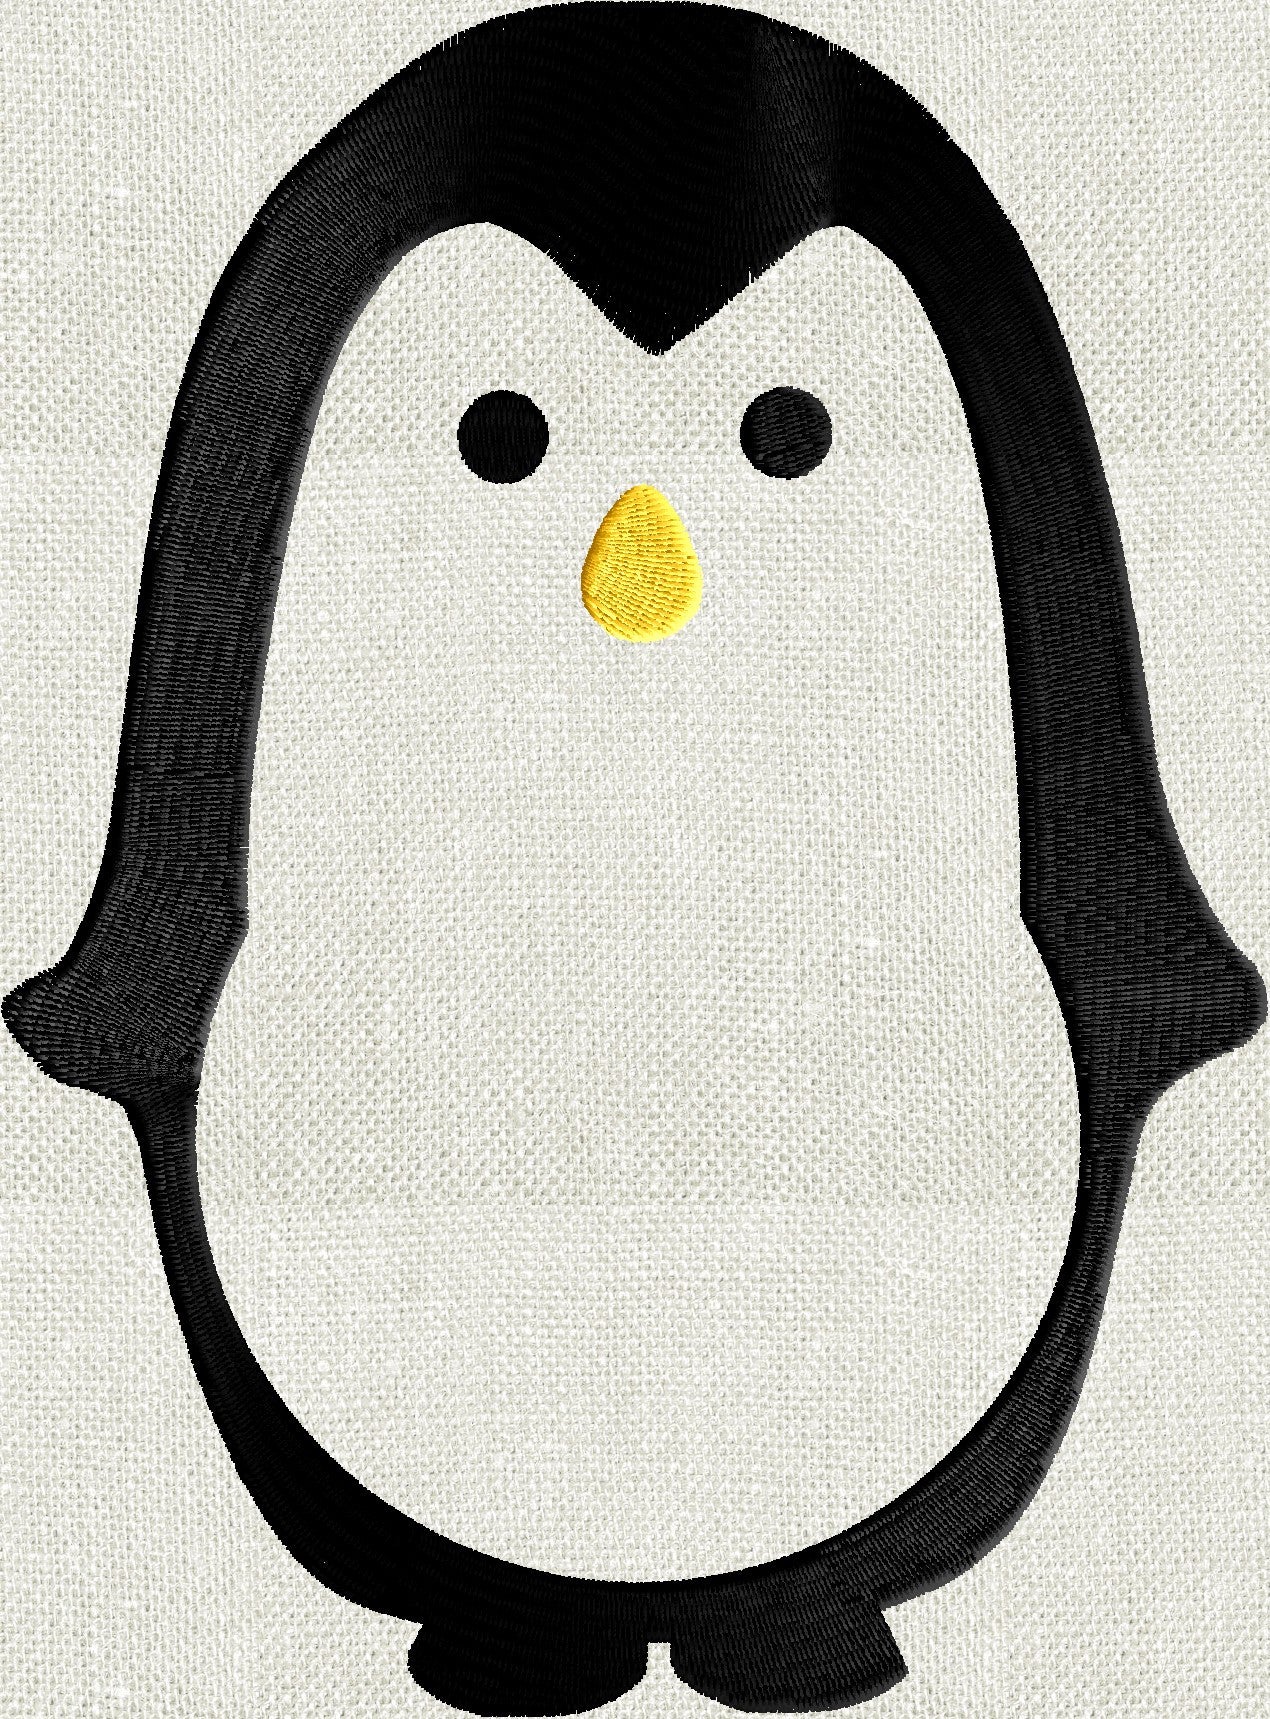 Penguin Frame Design - EMBROIDERY DESIGN FILE - Instant download animals